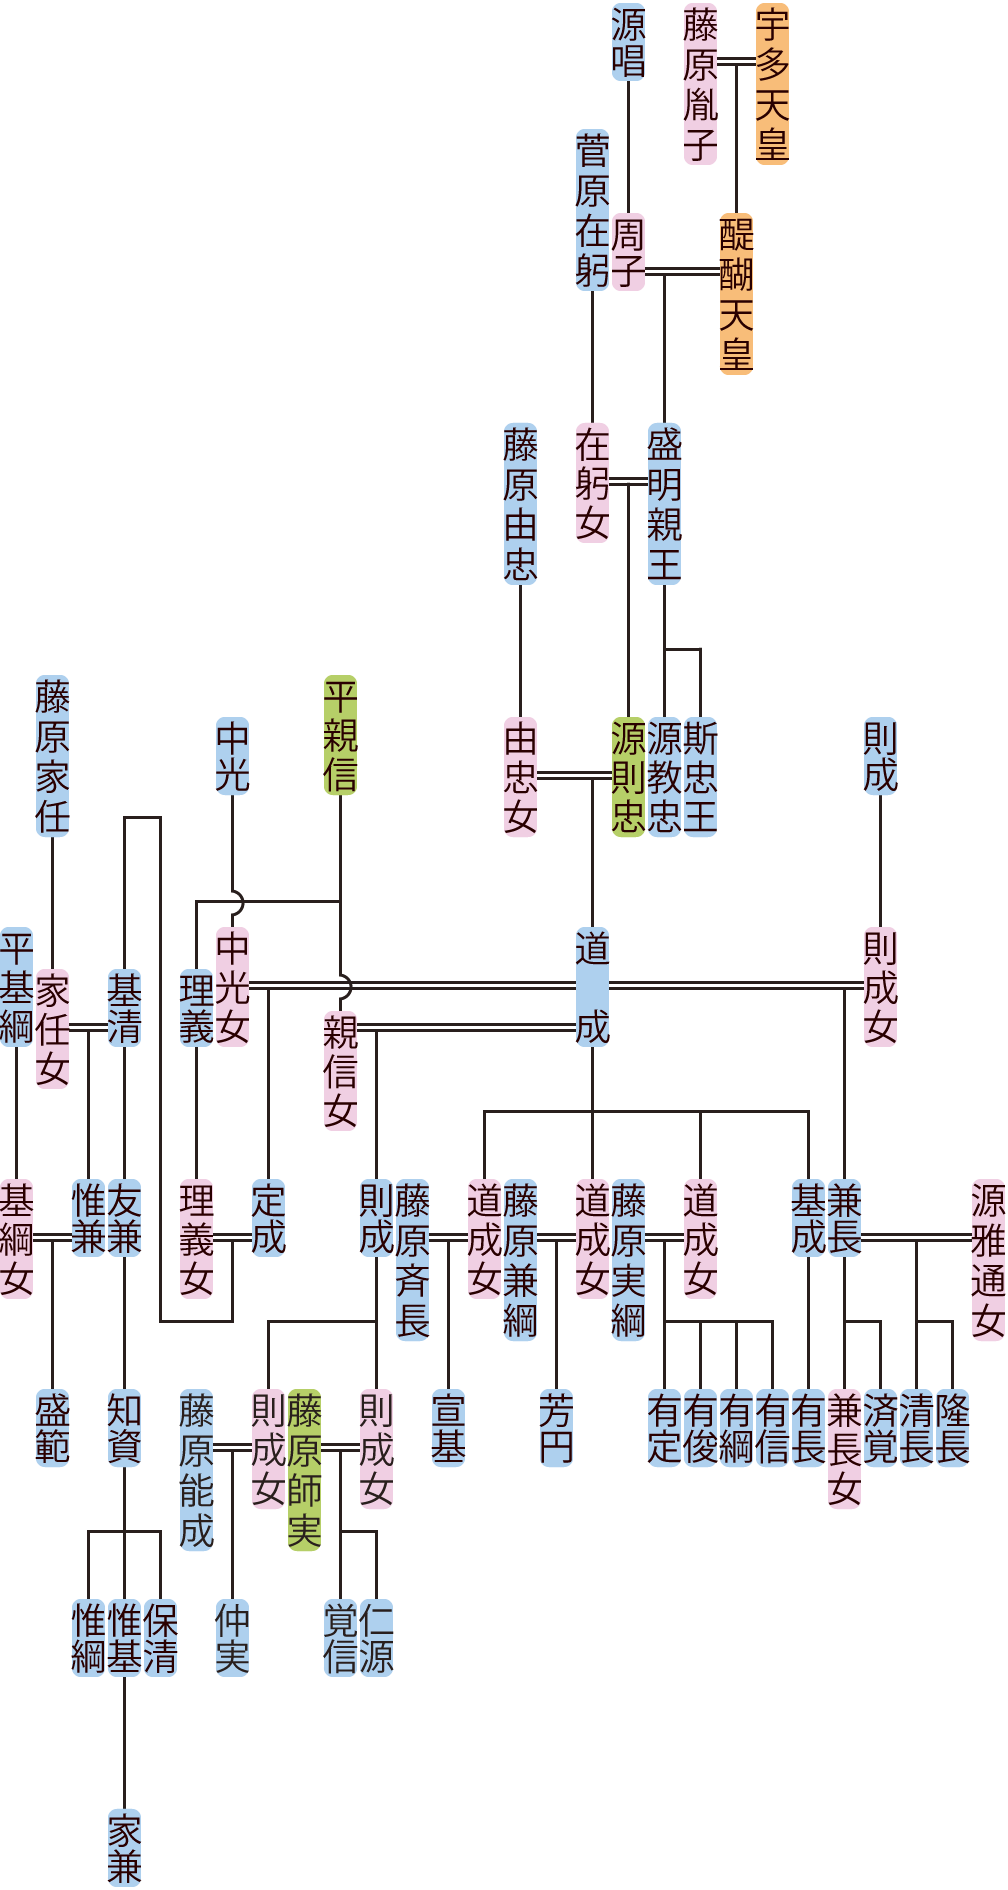 盛明親王～源道成の系図